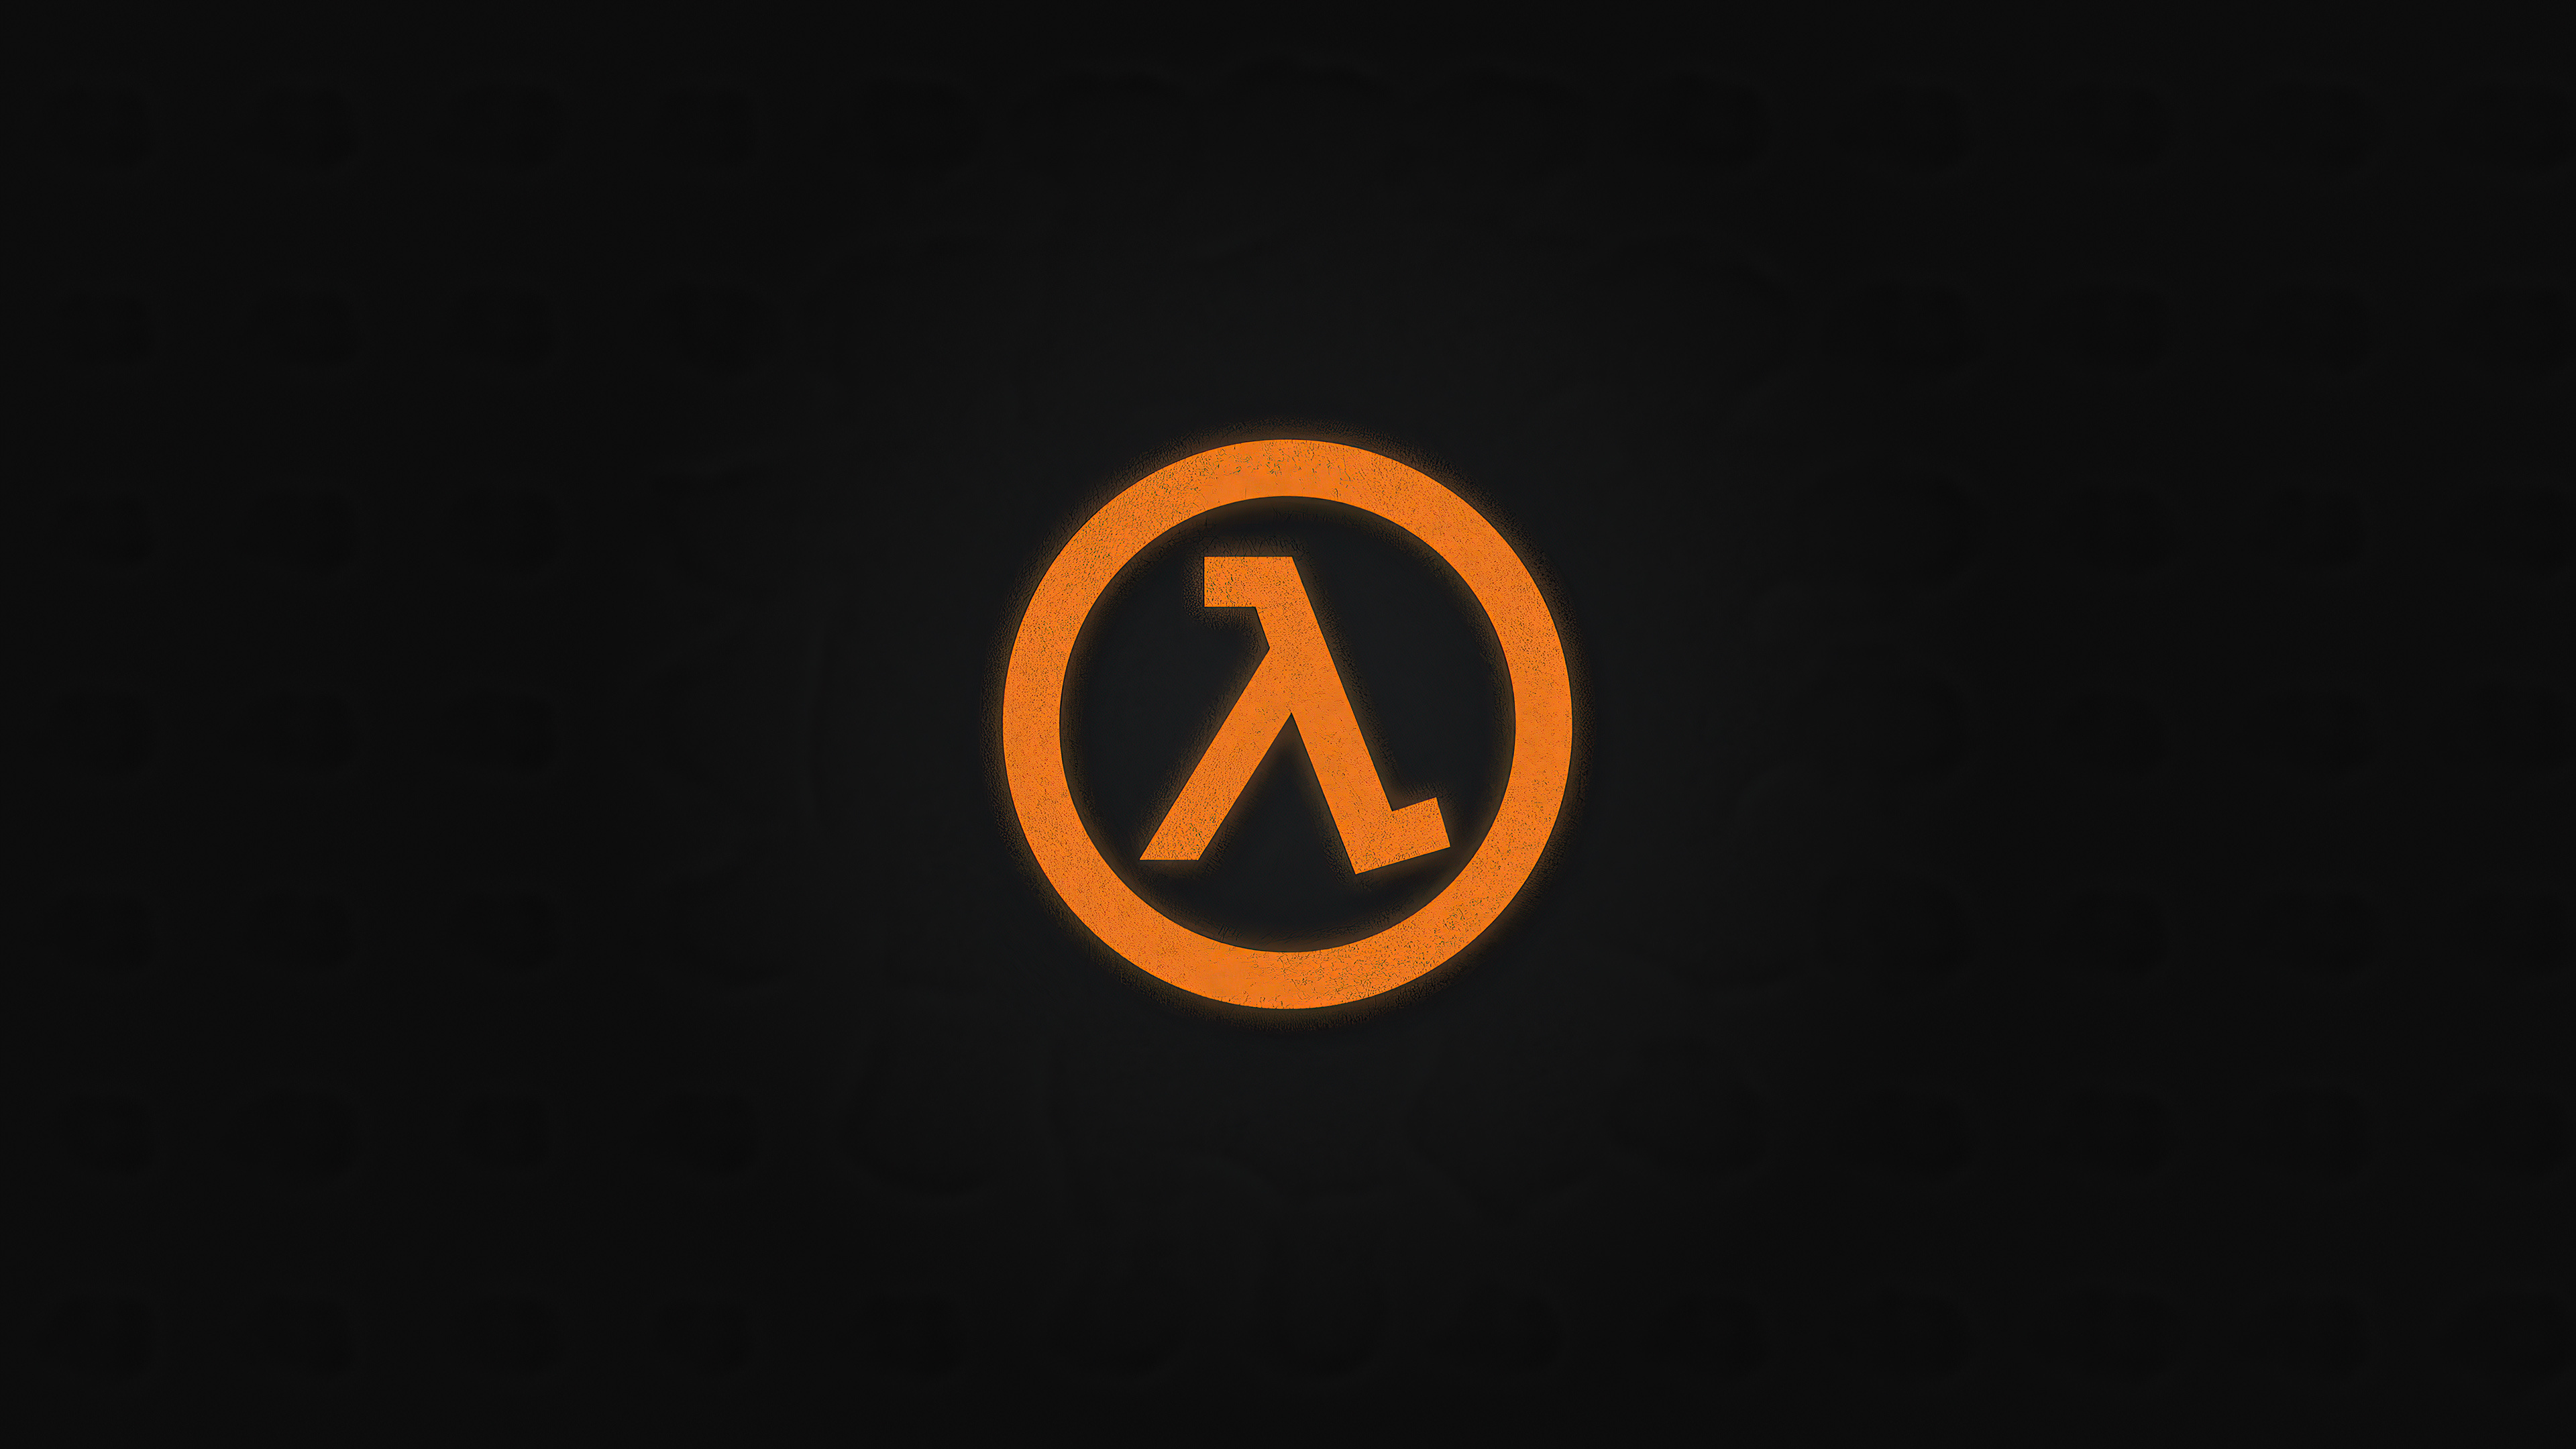 Half-Life 3, 4K wallpapers, Premium Xperia, High-quality visuals, 3840x2160 4K Desktop